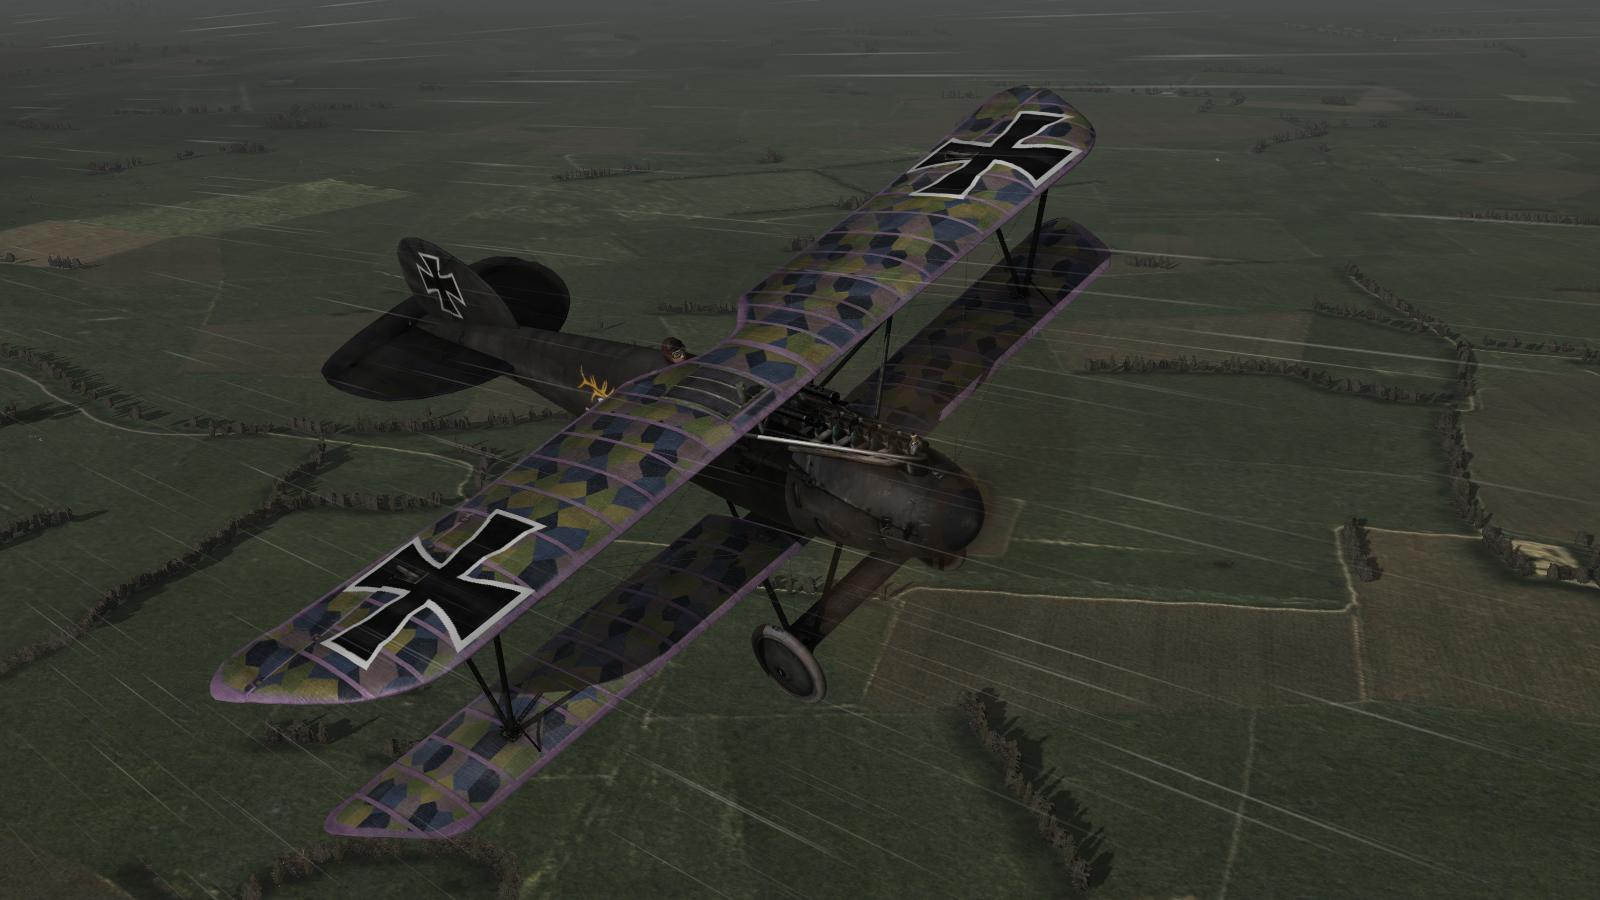 Wings over Flanders Fields - Albatros D.V, Karl Degelow